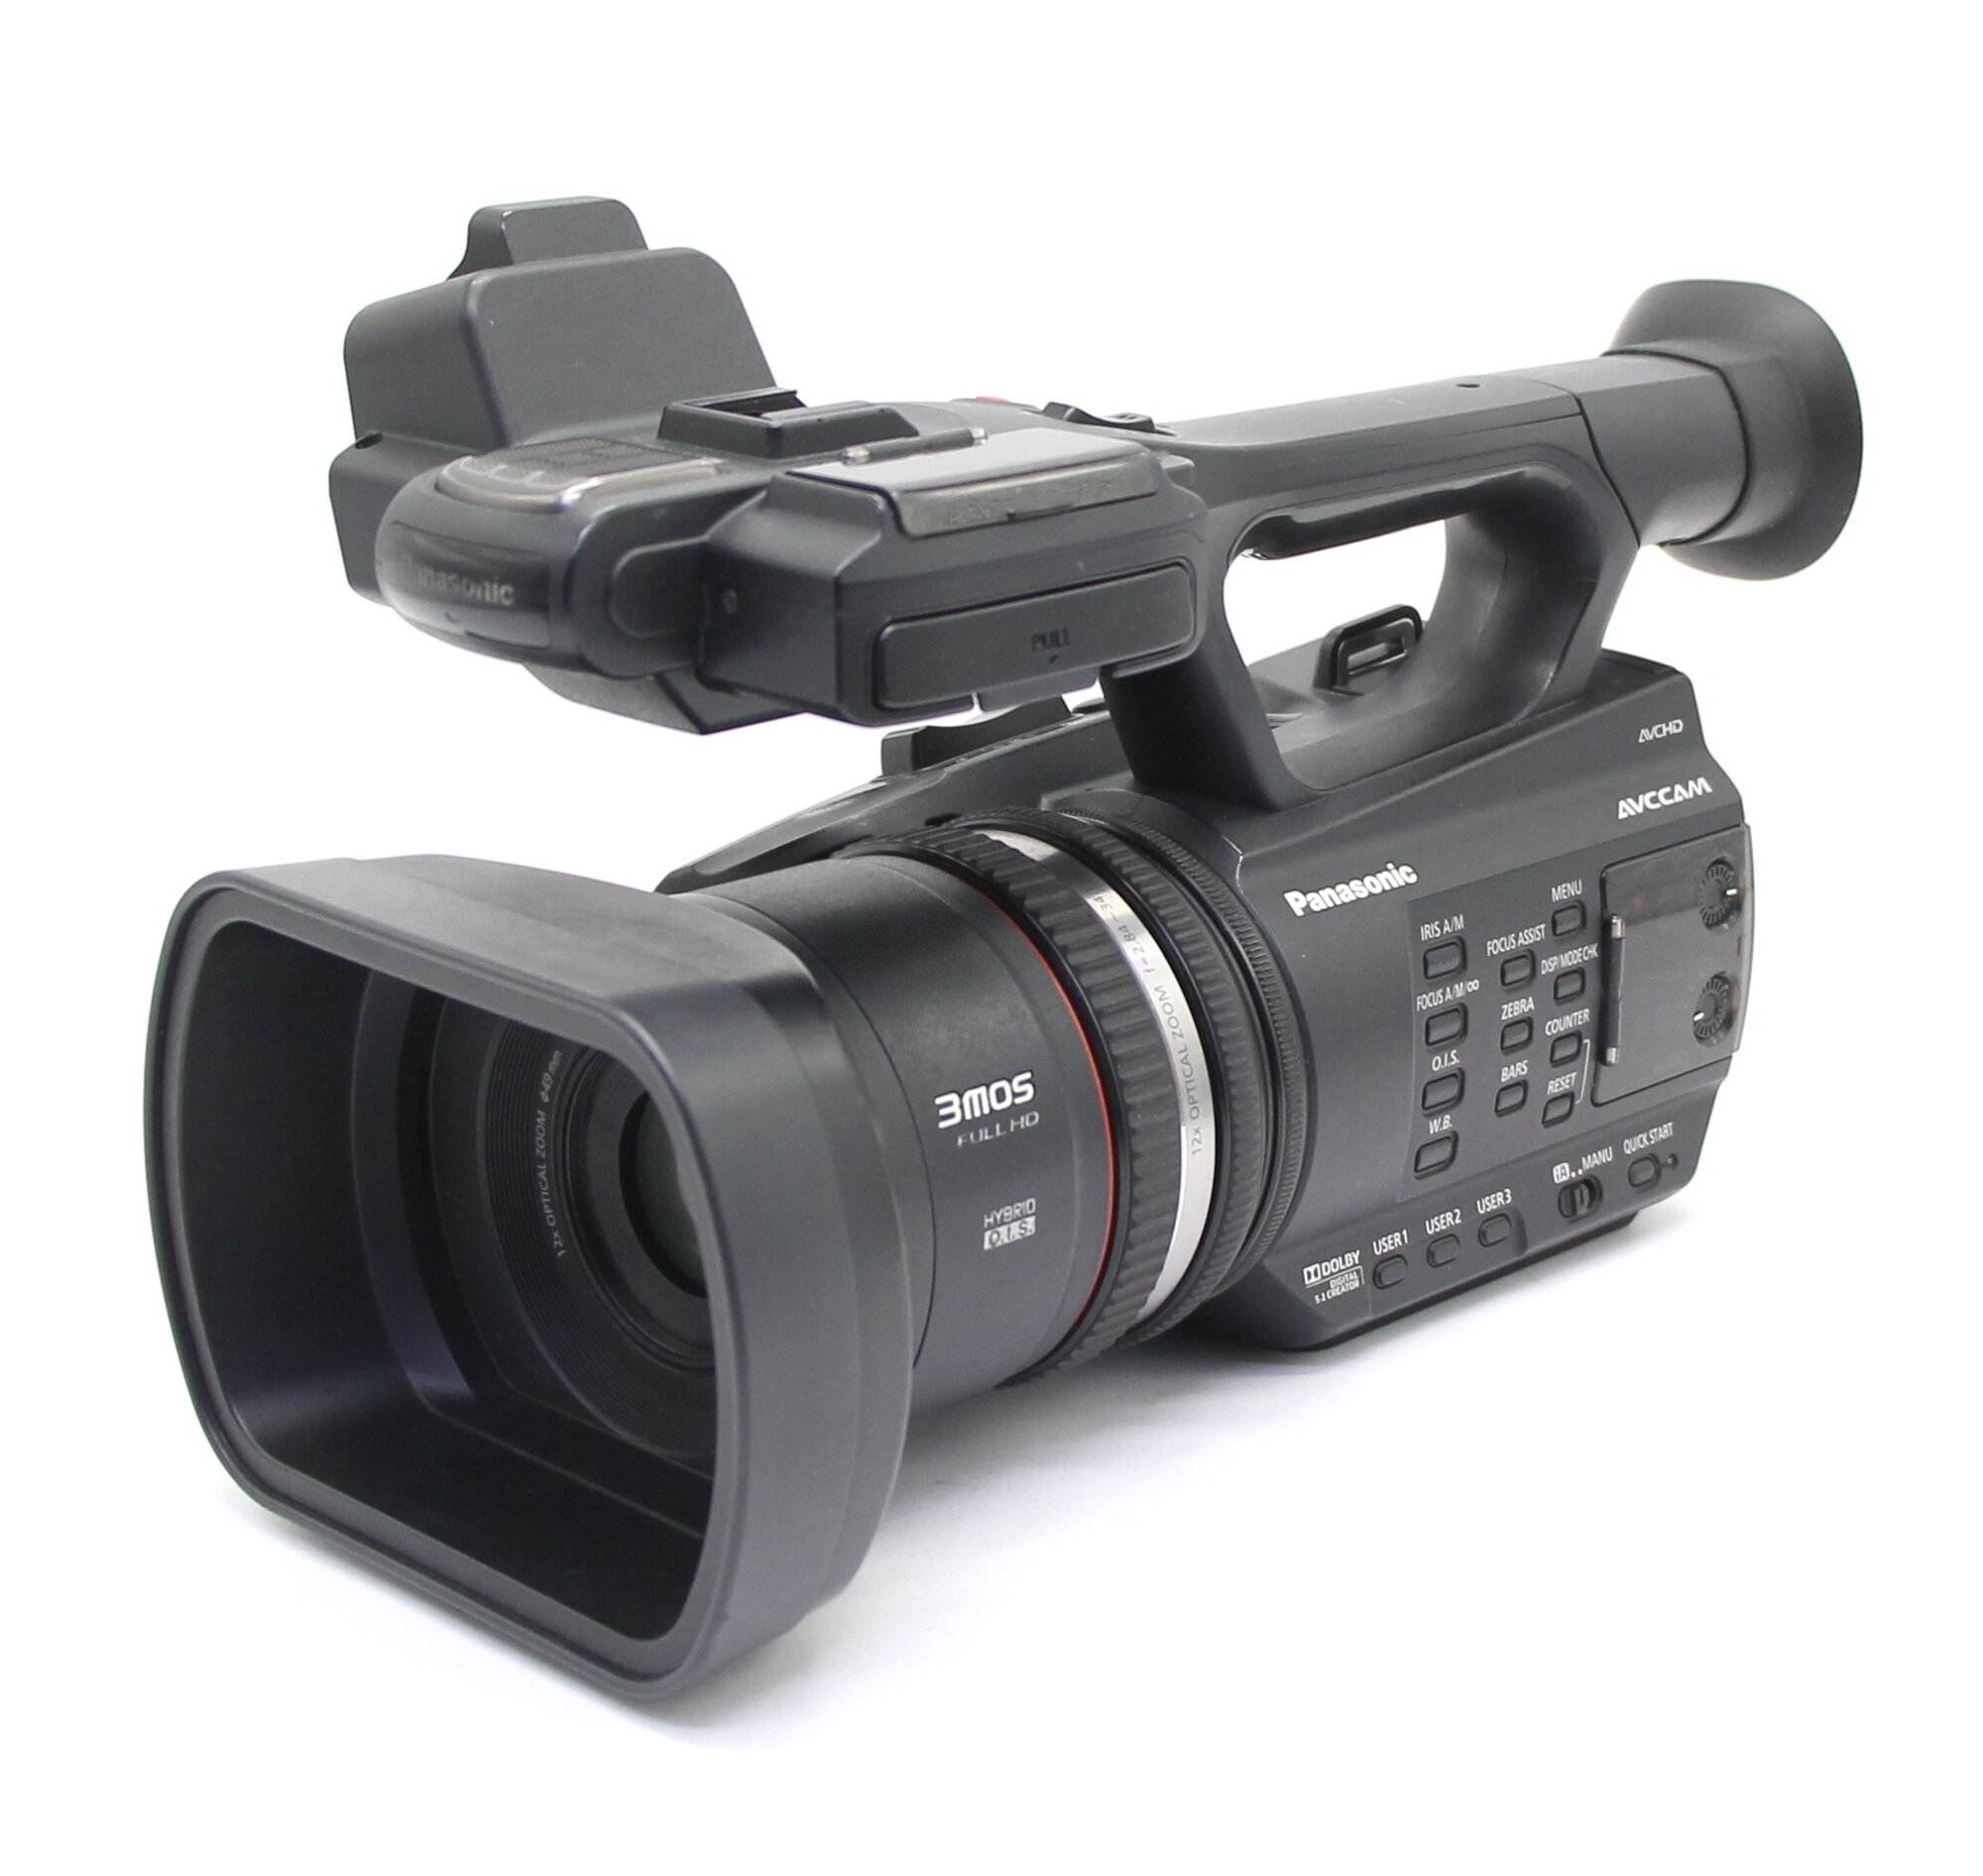 Видеокамера Panasonic AG-AC90EN (пробег 1400 часов)